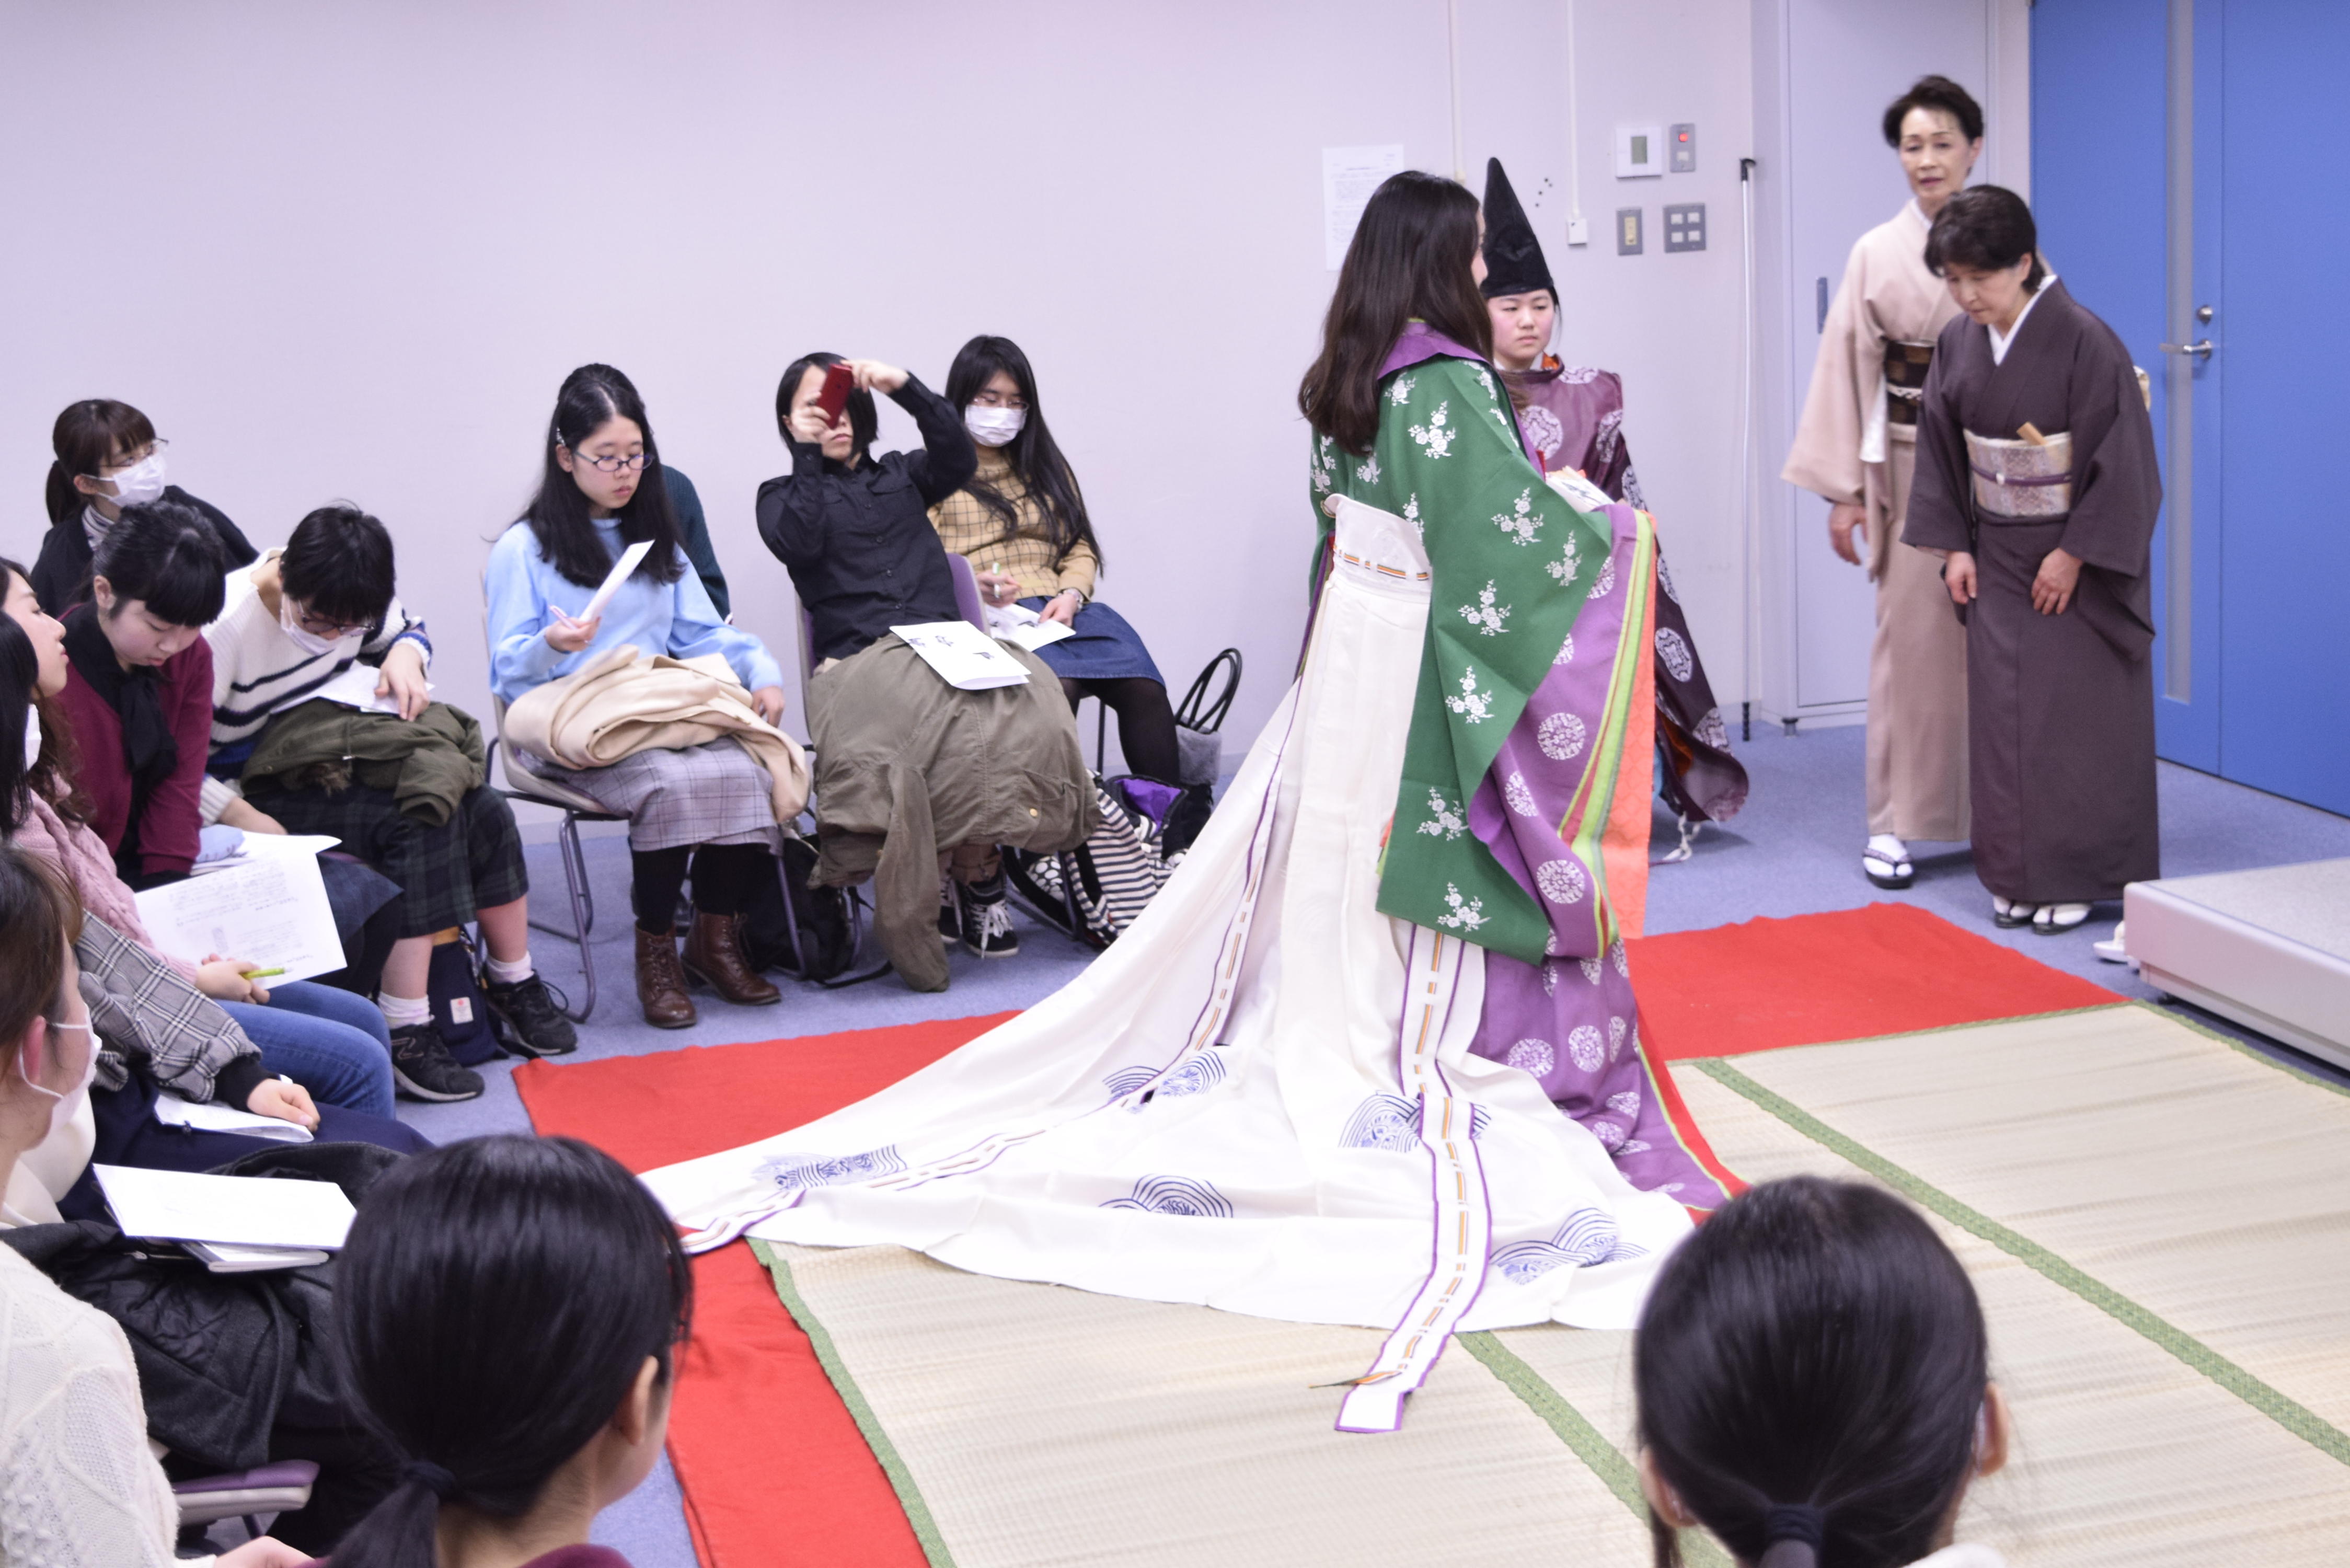 共立女子大学が文芸学部文芸学科の授業の一環として「十二単の着装見学」を実施 -- 学生がモデルとなり、専門家による講義と実演で王朝装束を体感 --